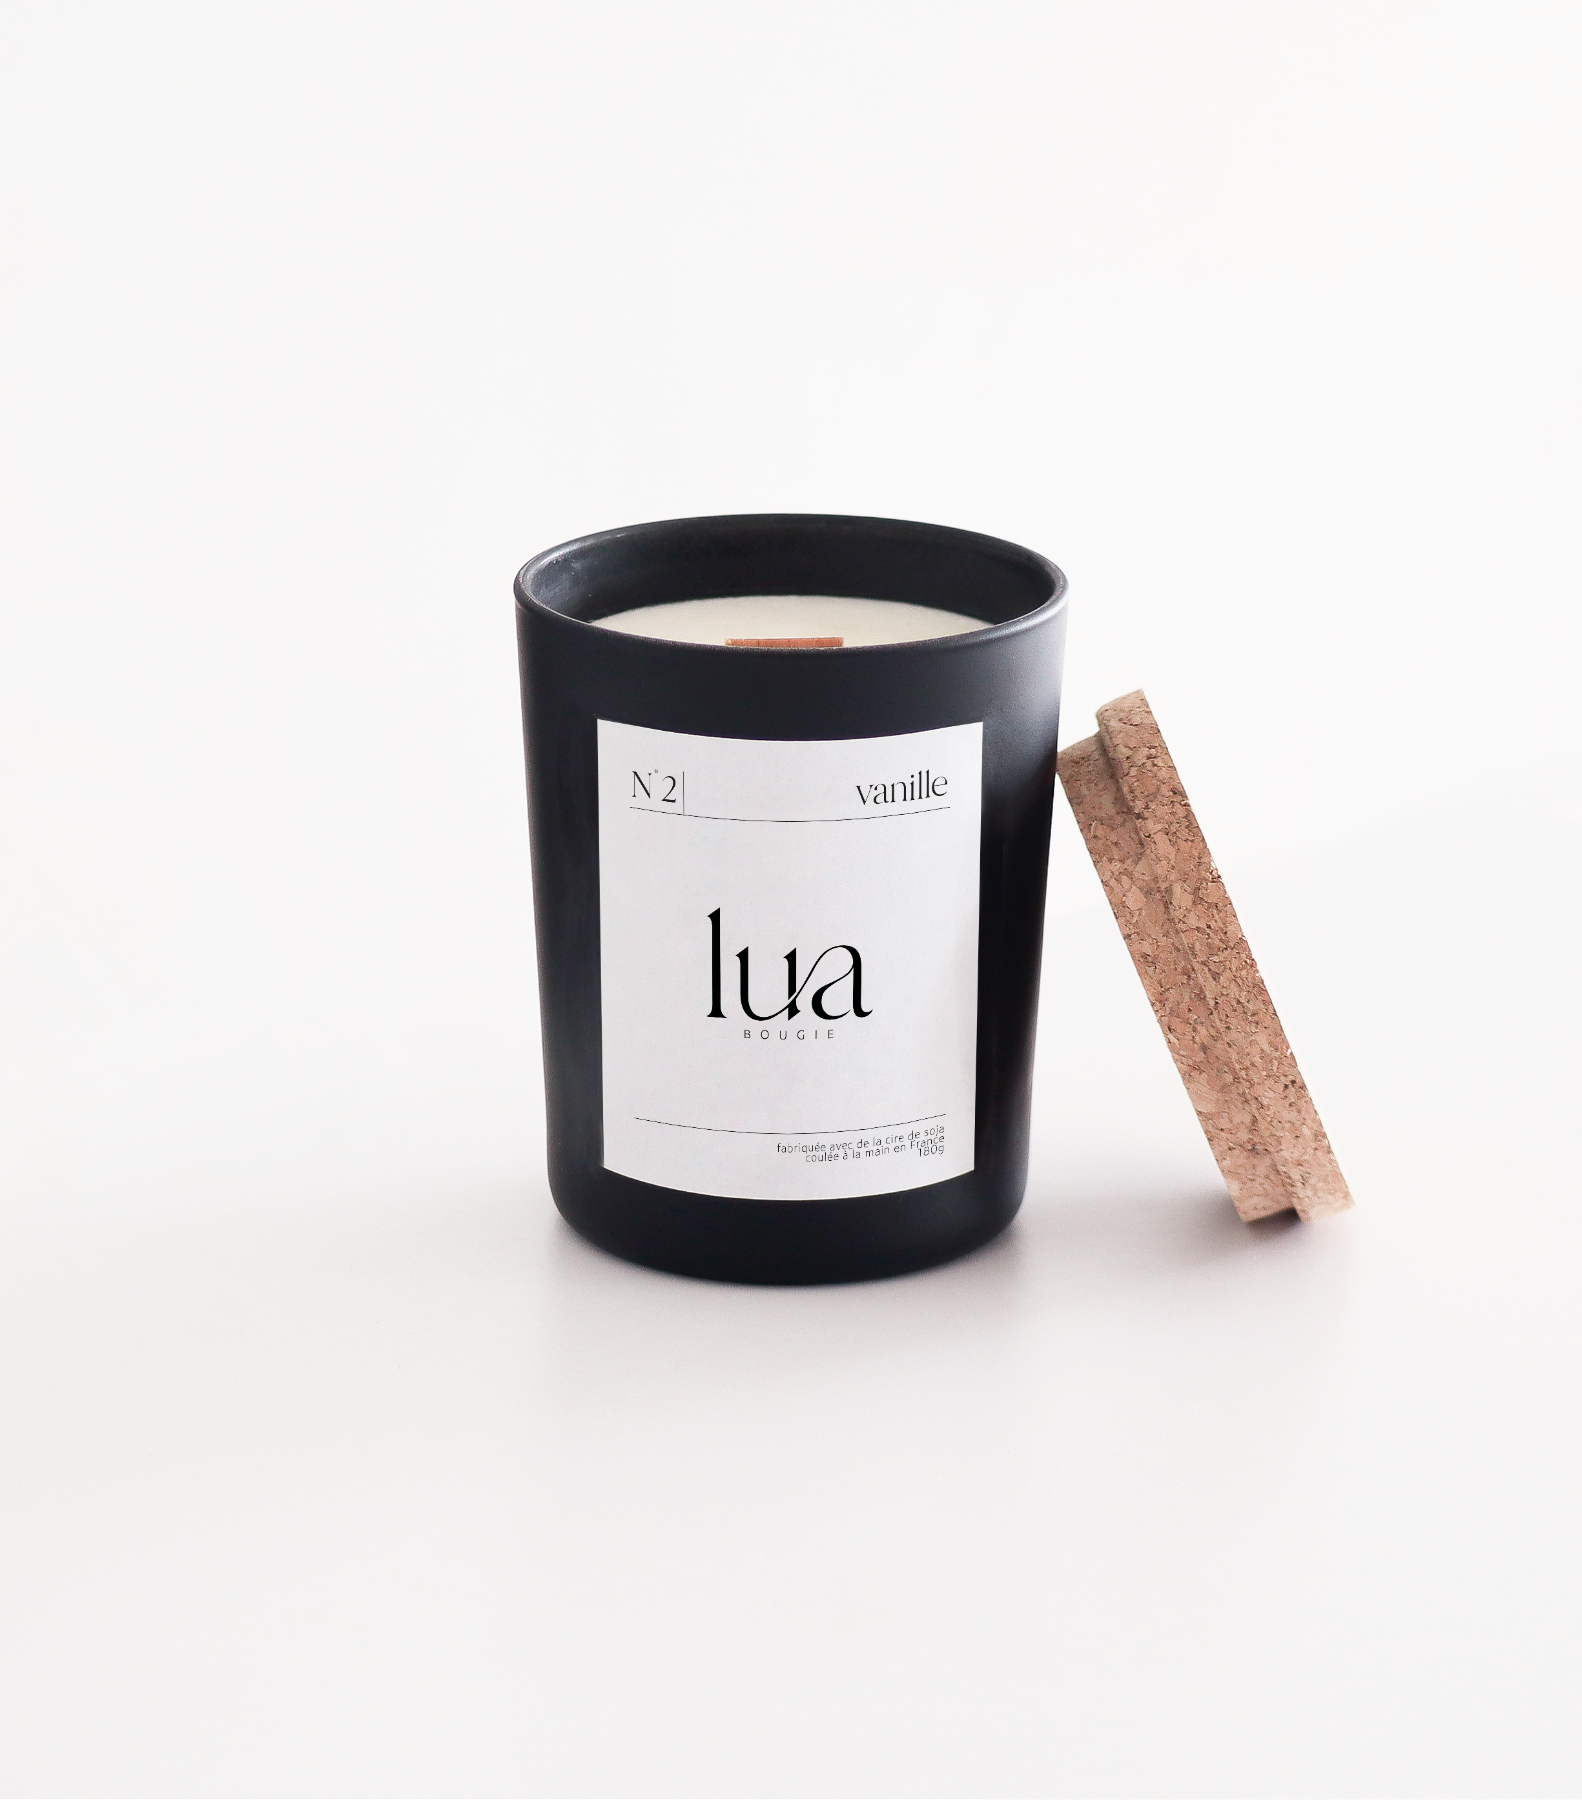 Bougie Lua parfumée et rechargeables, parfum vanille, contenant noir, 180g. 